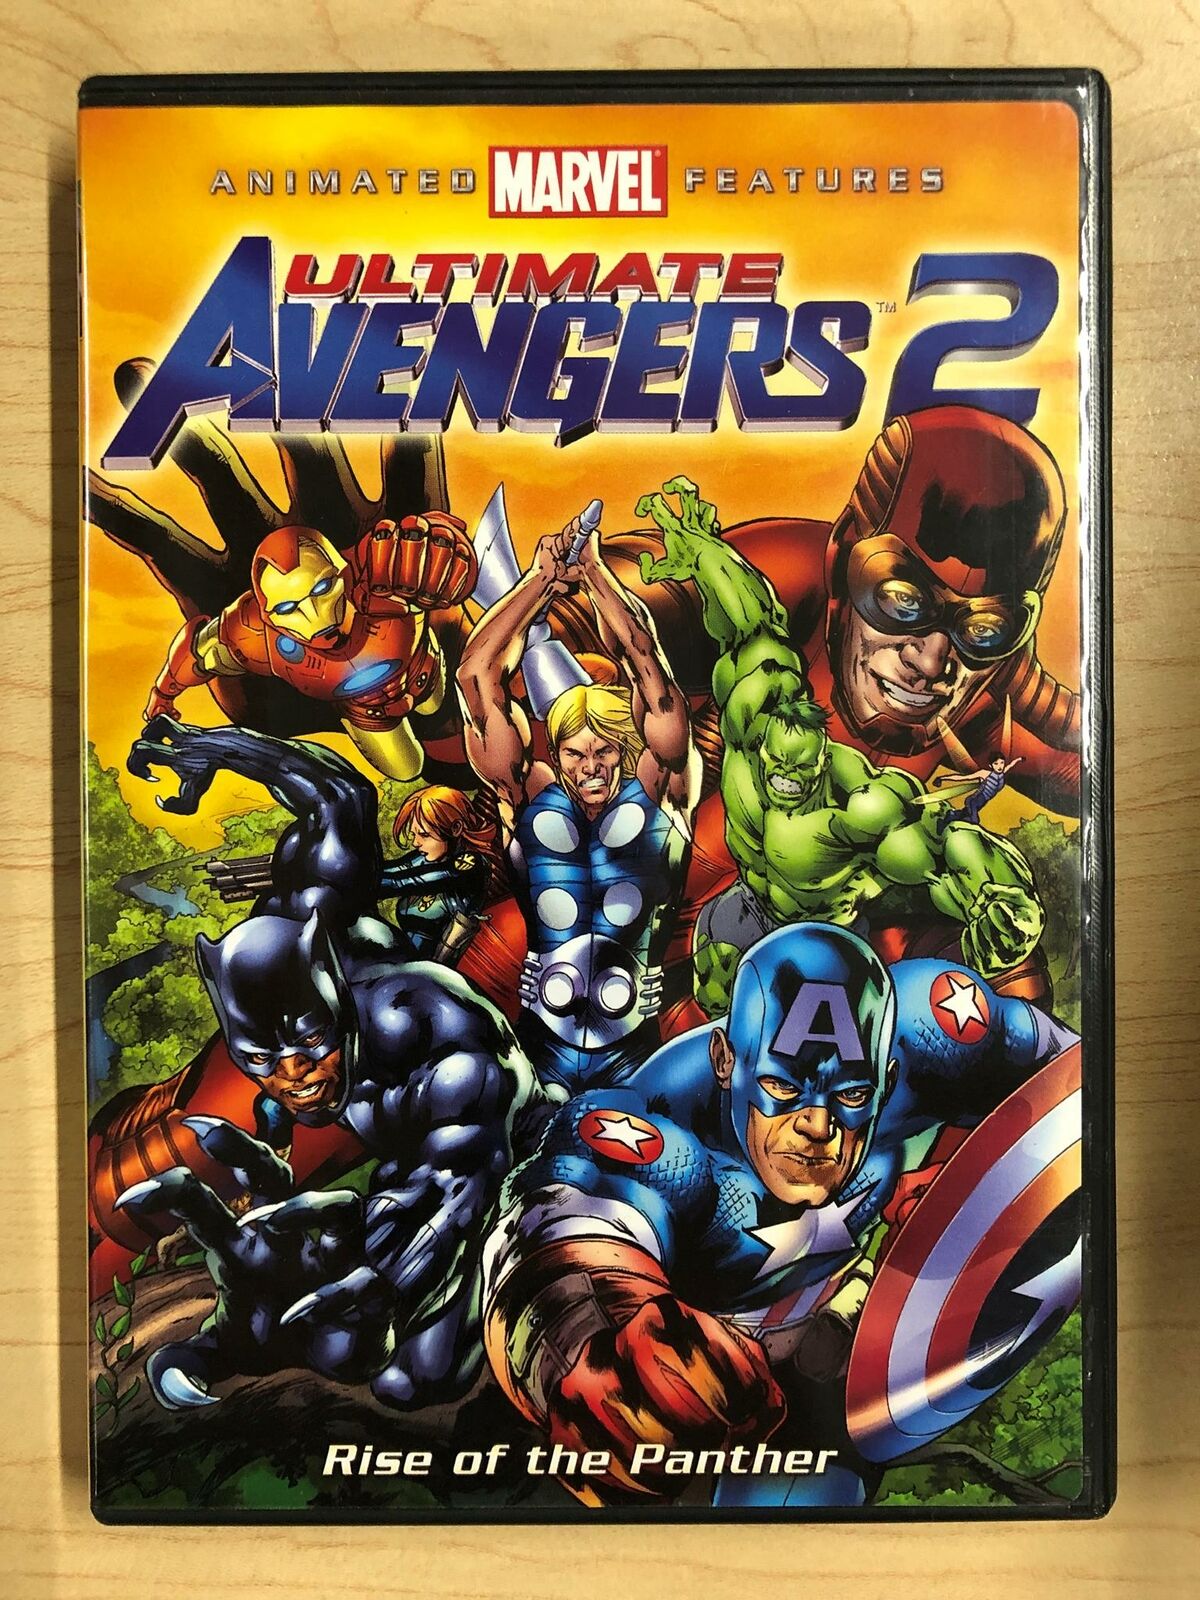 Ultimate Avengers 2 (DVD, Animated Marvel, 2006) - H1226 31398196624 | eBay